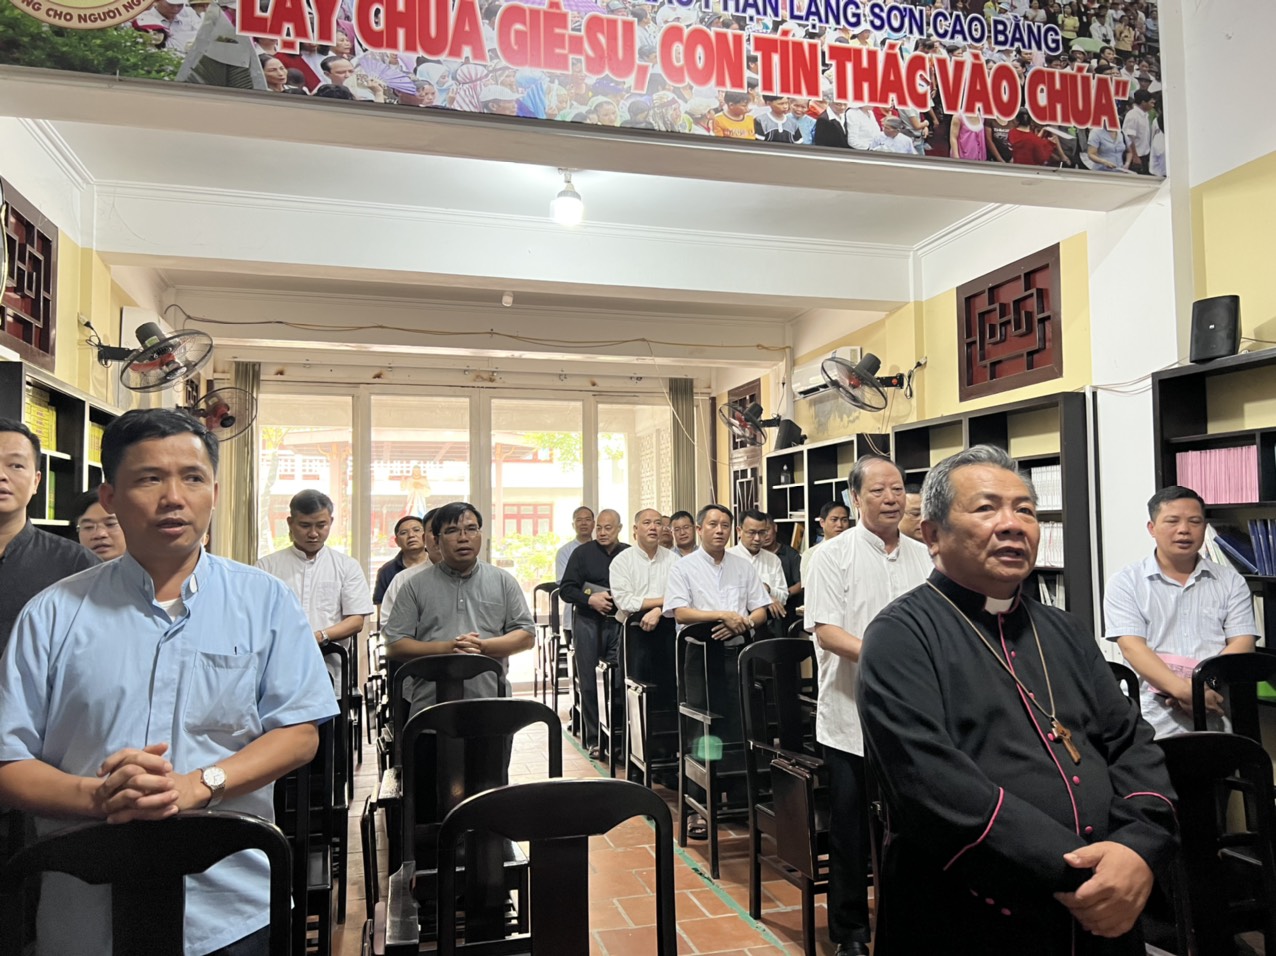 Gp Lạng Sơn – Cao Bằng: Tĩnh tâm Linh mục và gặp gỡ đại diện HĐMV giáo xứ trong tháng 9